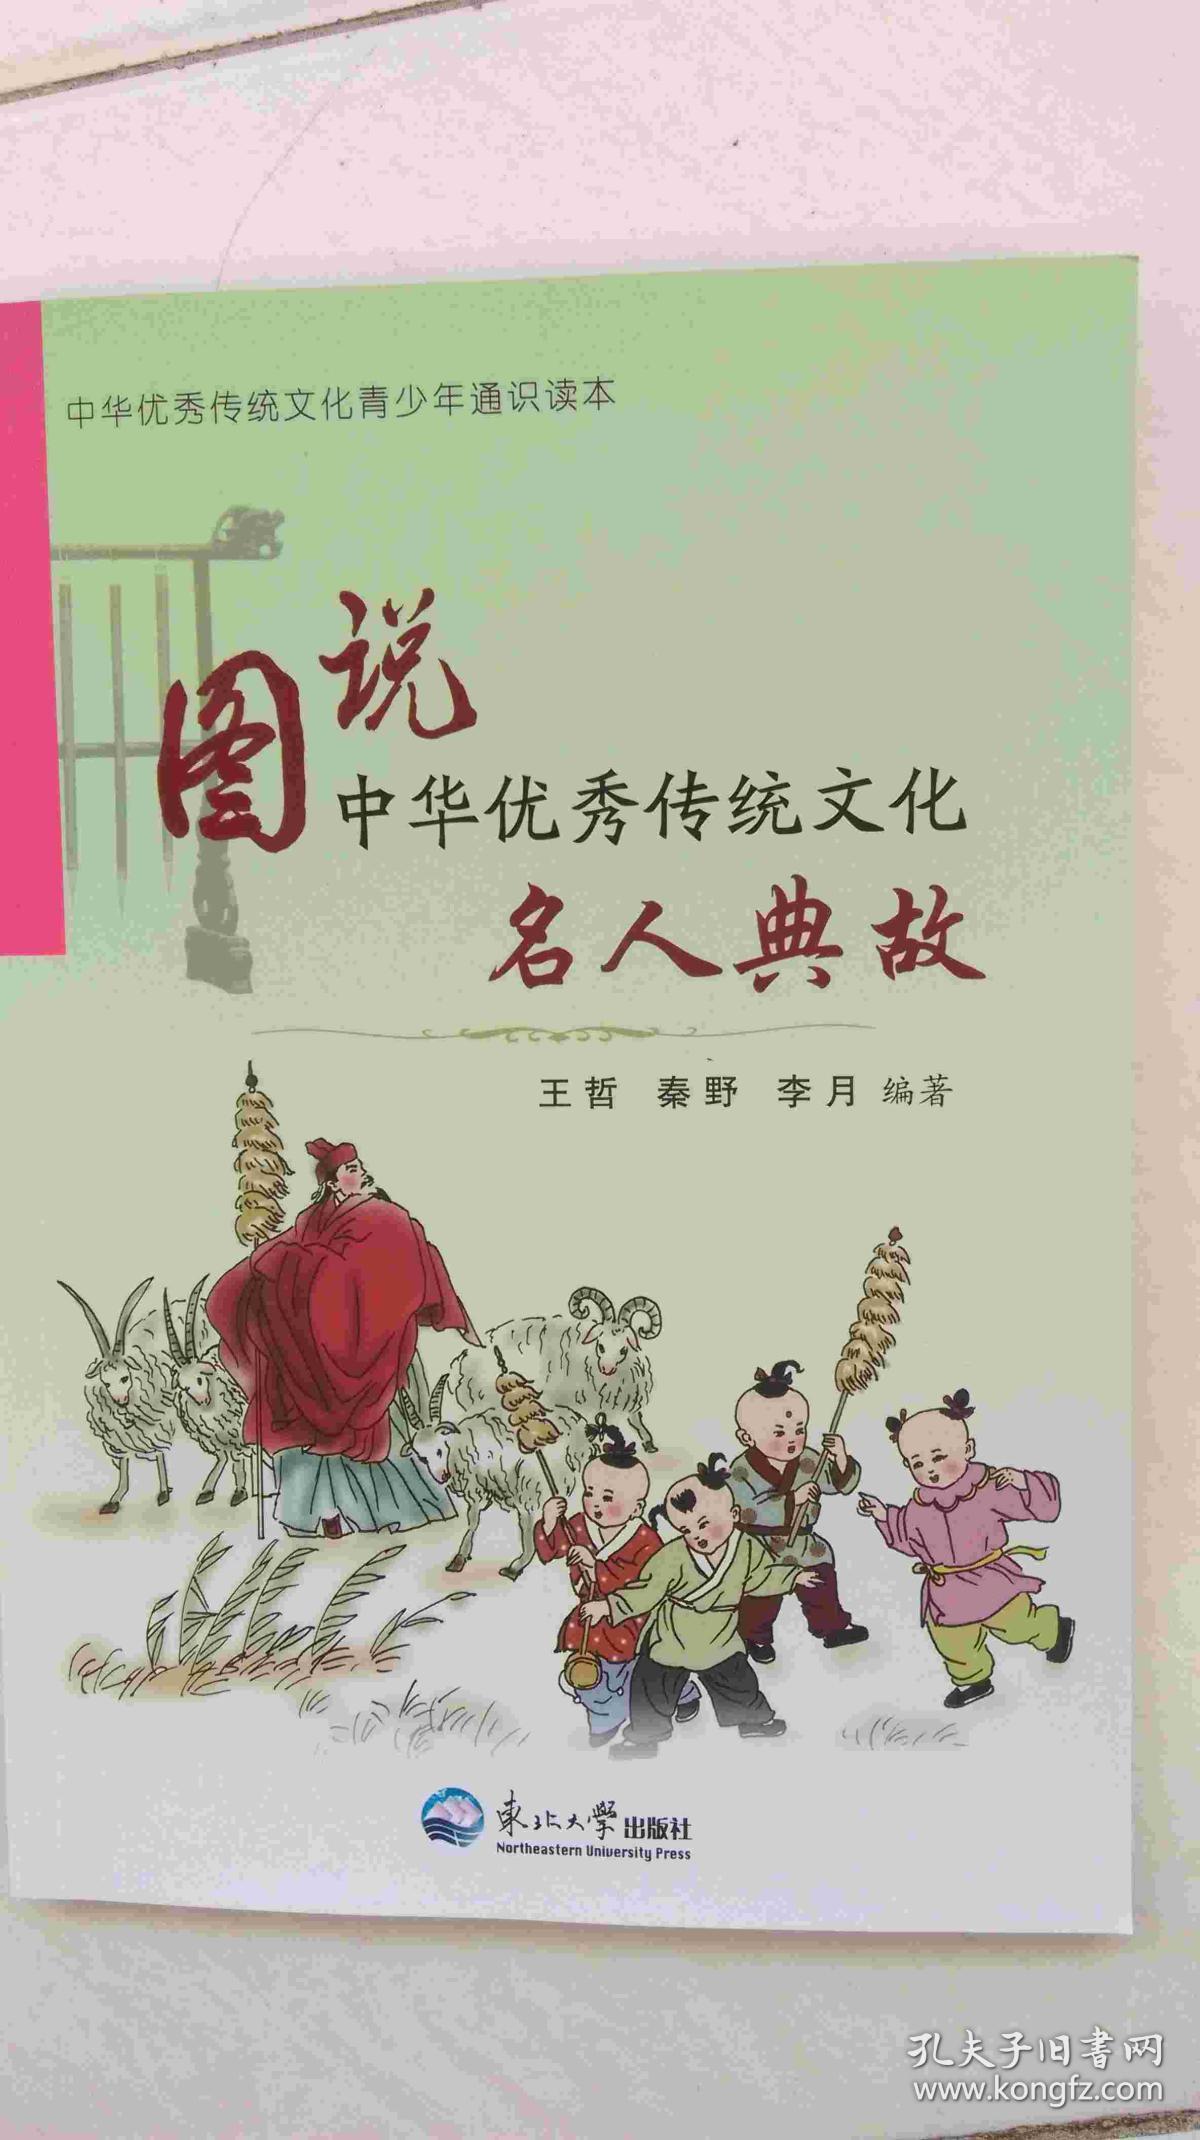 图说中华优秀传统文化